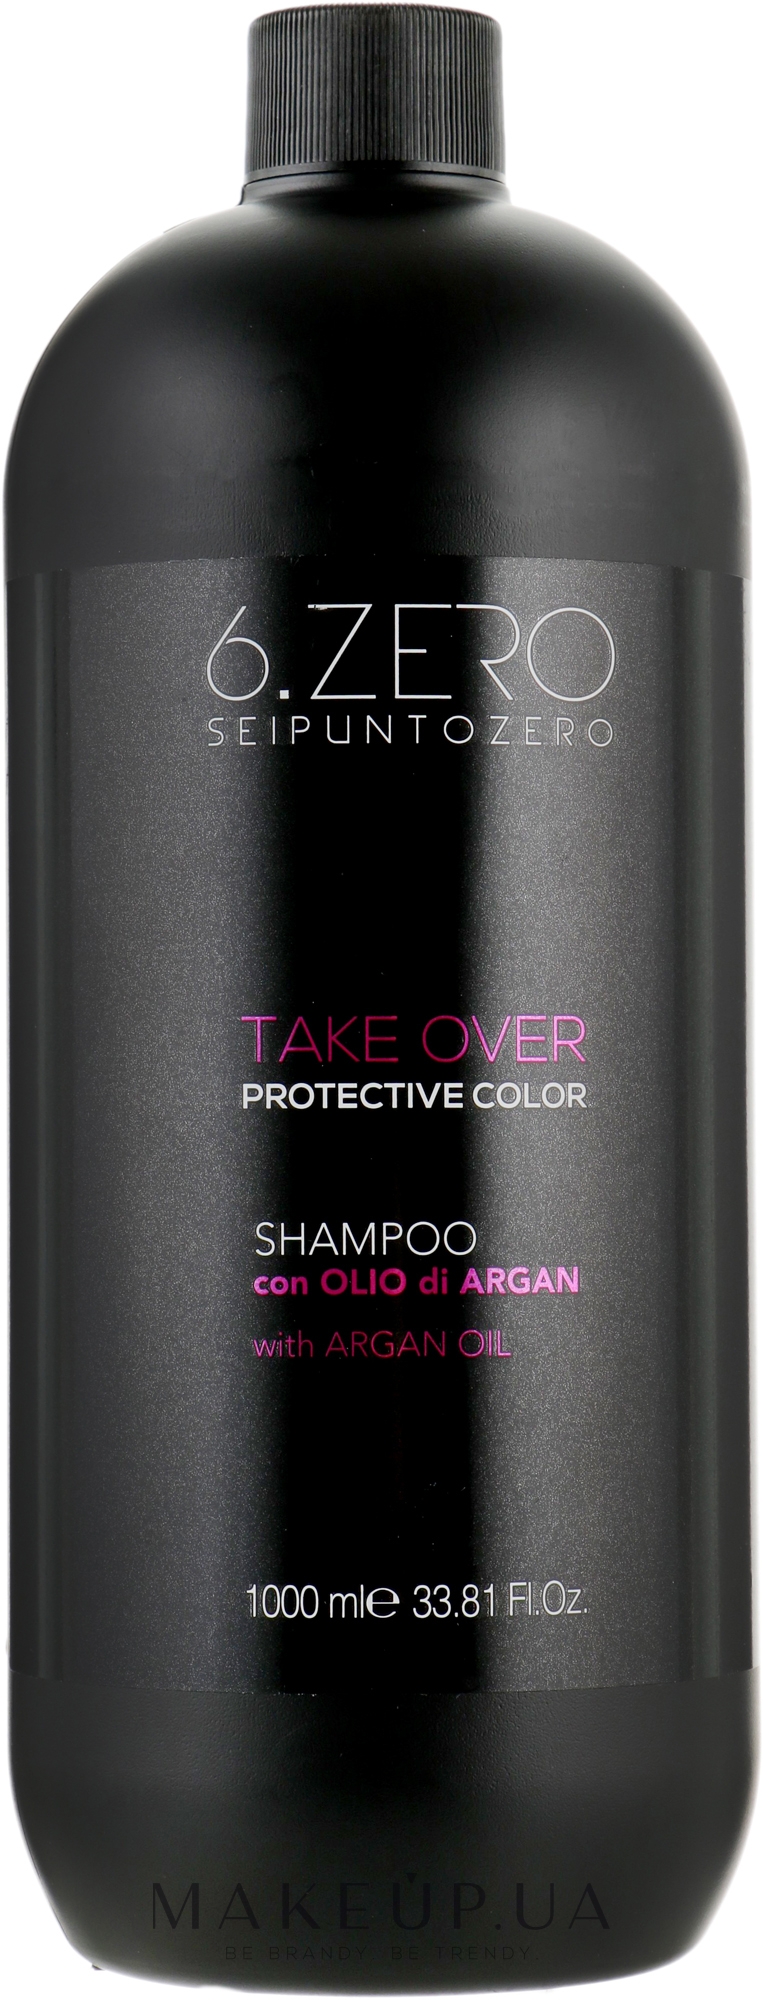 Шампунь для защиты цвета окрашенных волос - Seipuntozero Take Over Protective Color — фото 1000ml